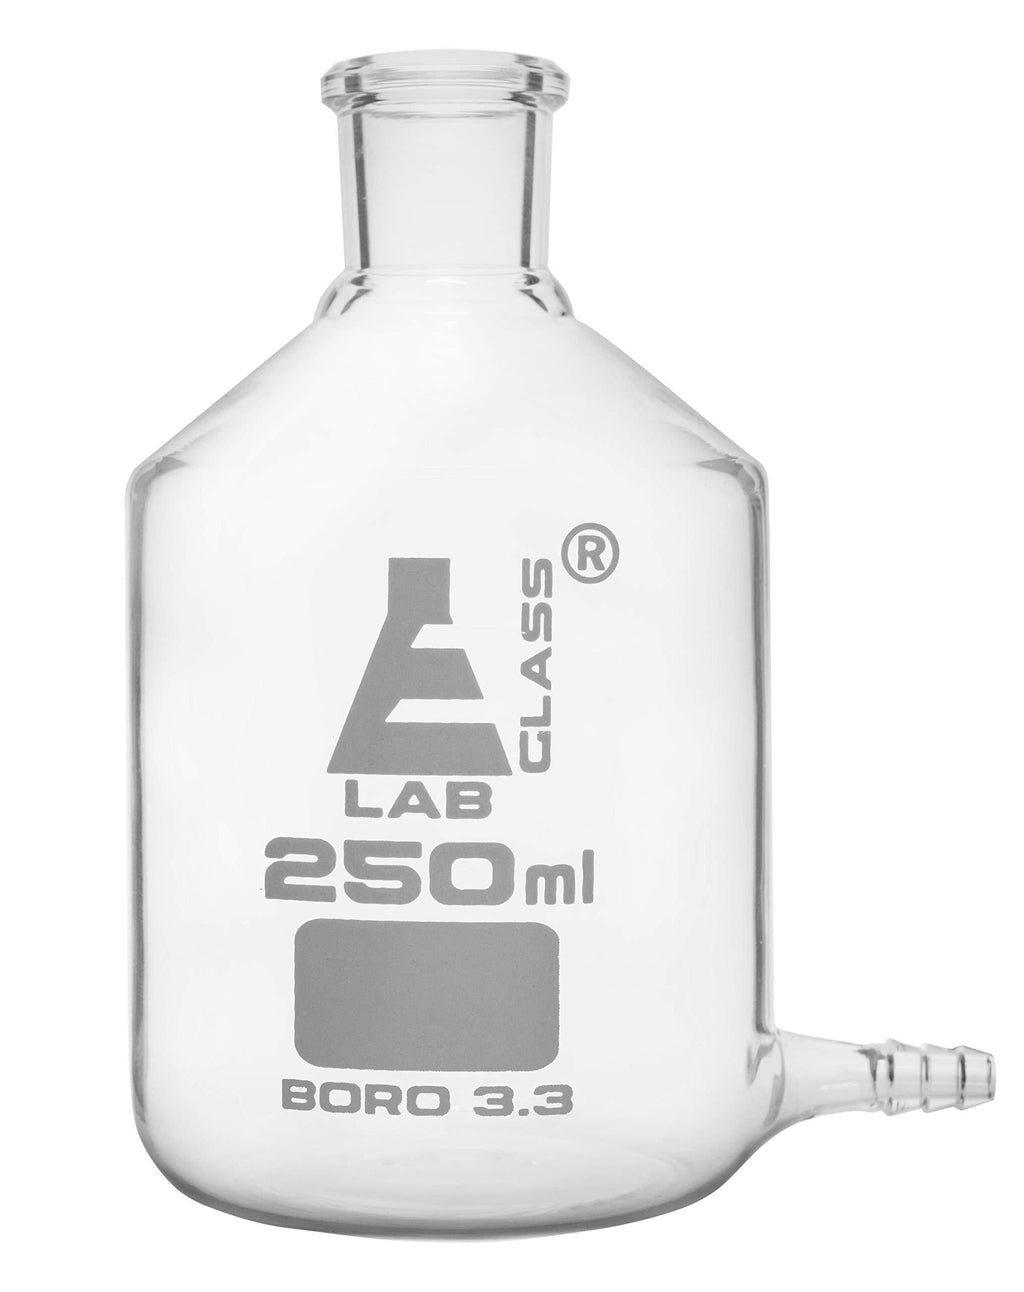 Aspirator Bottle, 250ml - with Outlet for Tubing - Borosilicate Glass - Eisco Labs - LeoForward Australia